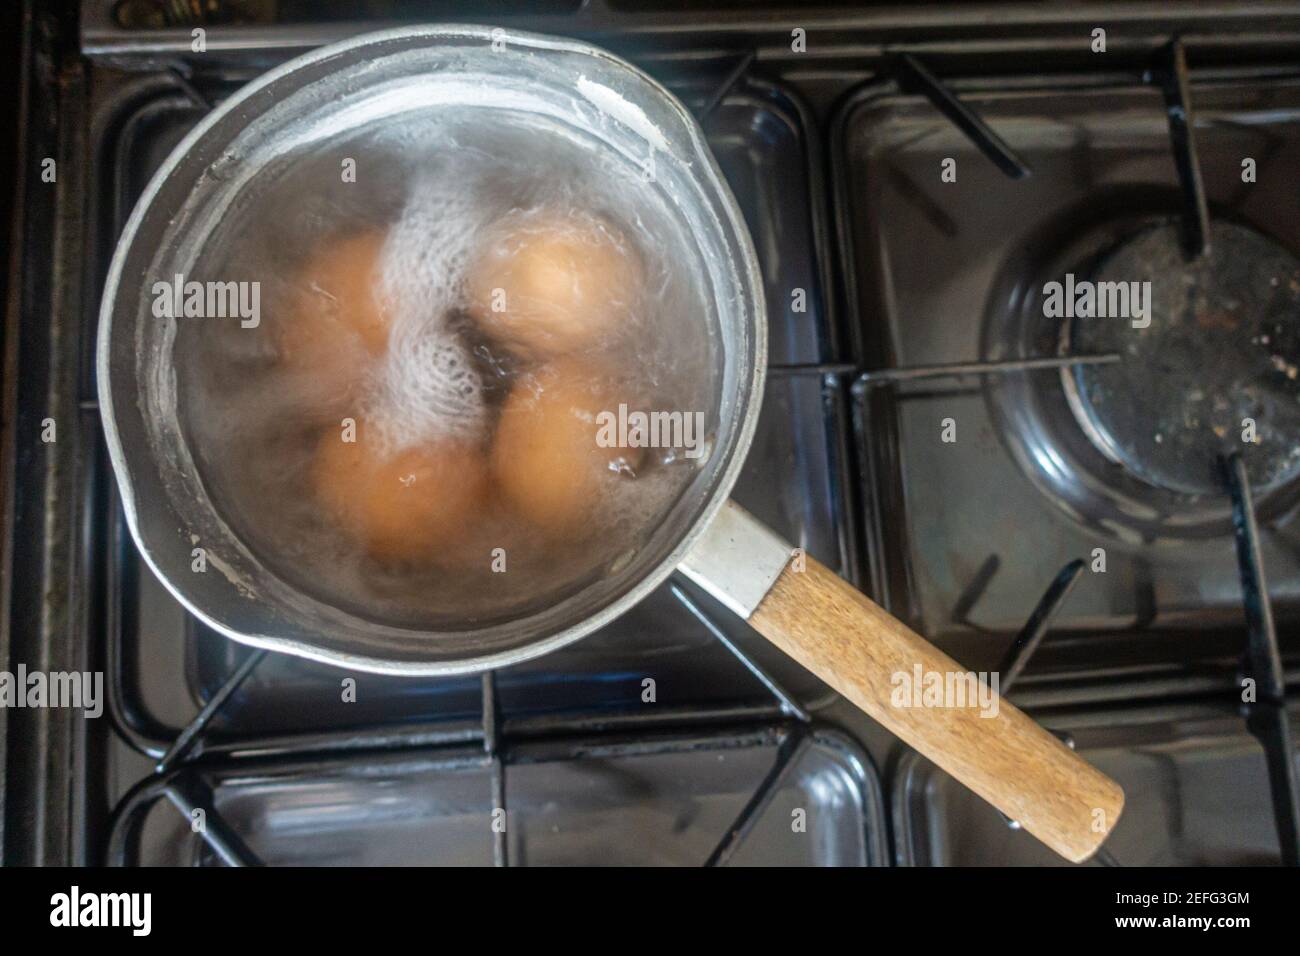 Eier kochen in einer Pfanne mit kochendem Wasser auf einem Gaskochfeld. Stockfoto